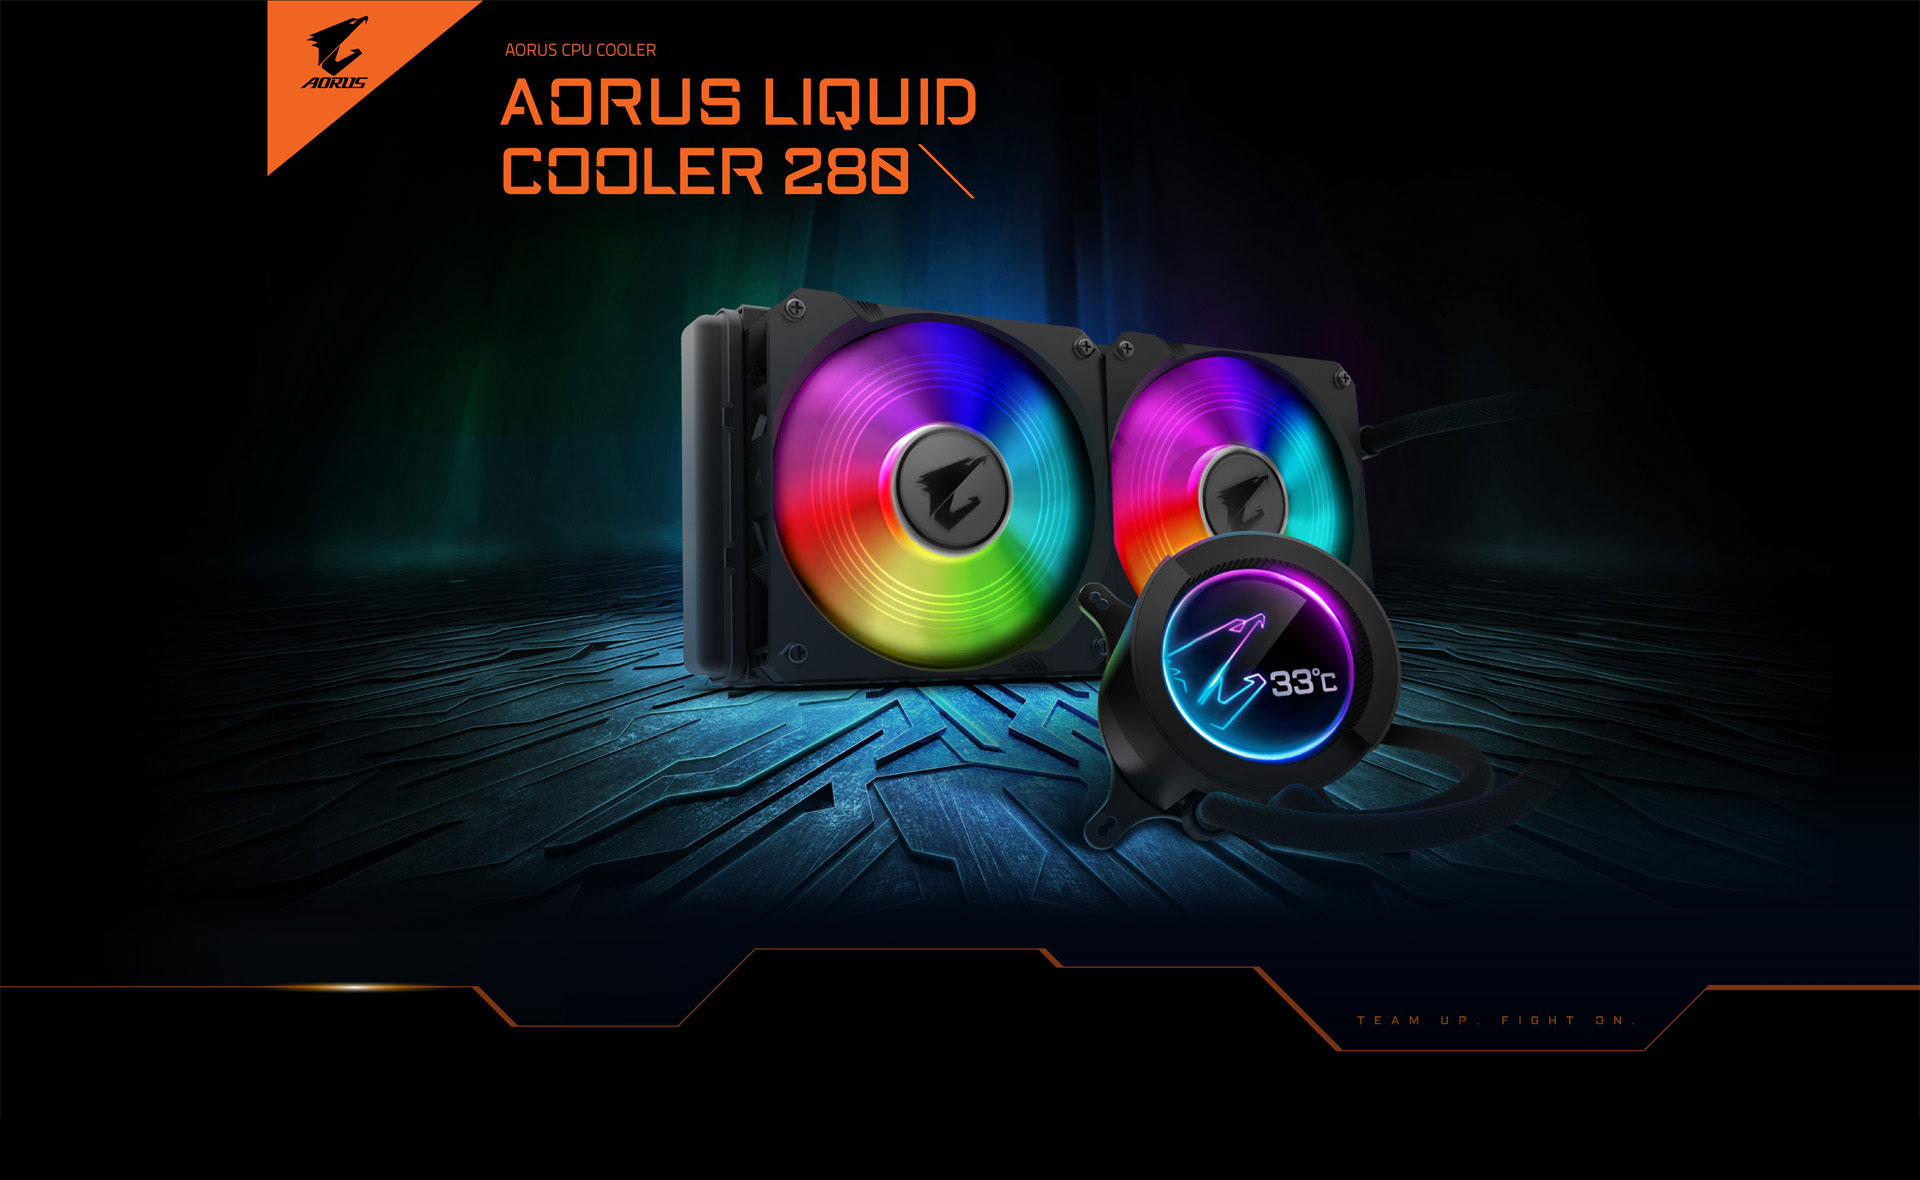 aorus liquid cooler 280 custom image